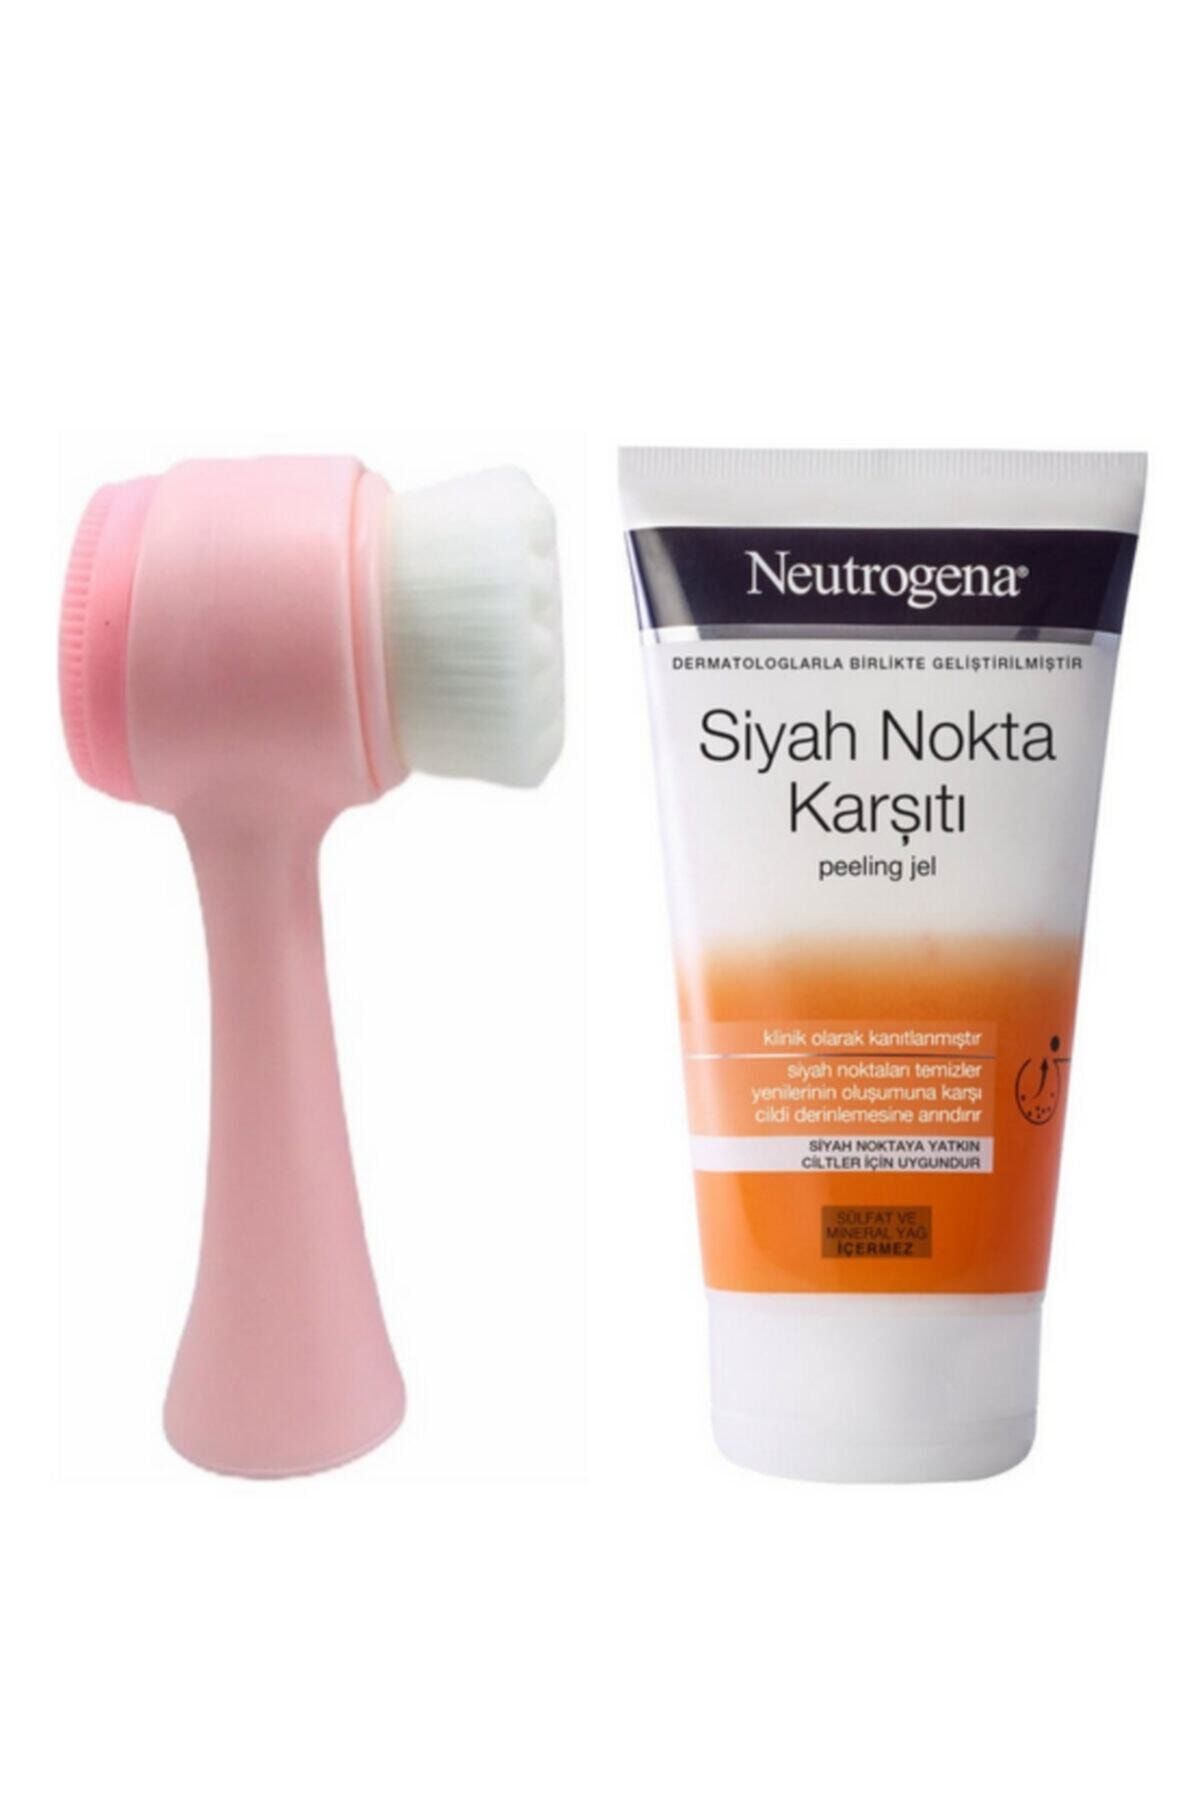 Neutrogena Cilt Yüz Temizleme Fırçası Pembe Ve Siyah Nokta Karşıtı Peeling Jel